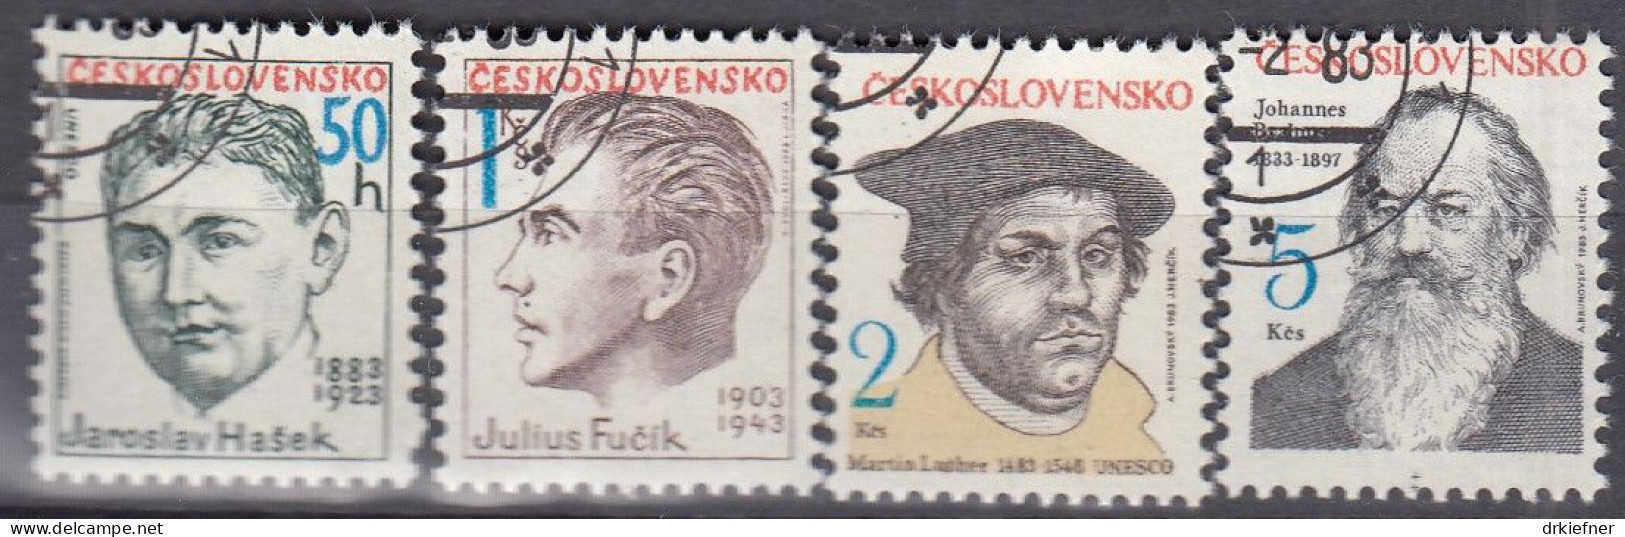 TSCHECHOSLOWAKEI  2699-2702, Gestempelt, Persönlichkeiten, Martin Luther, Johannes Brahms U.a., 1983 - Used Stamps